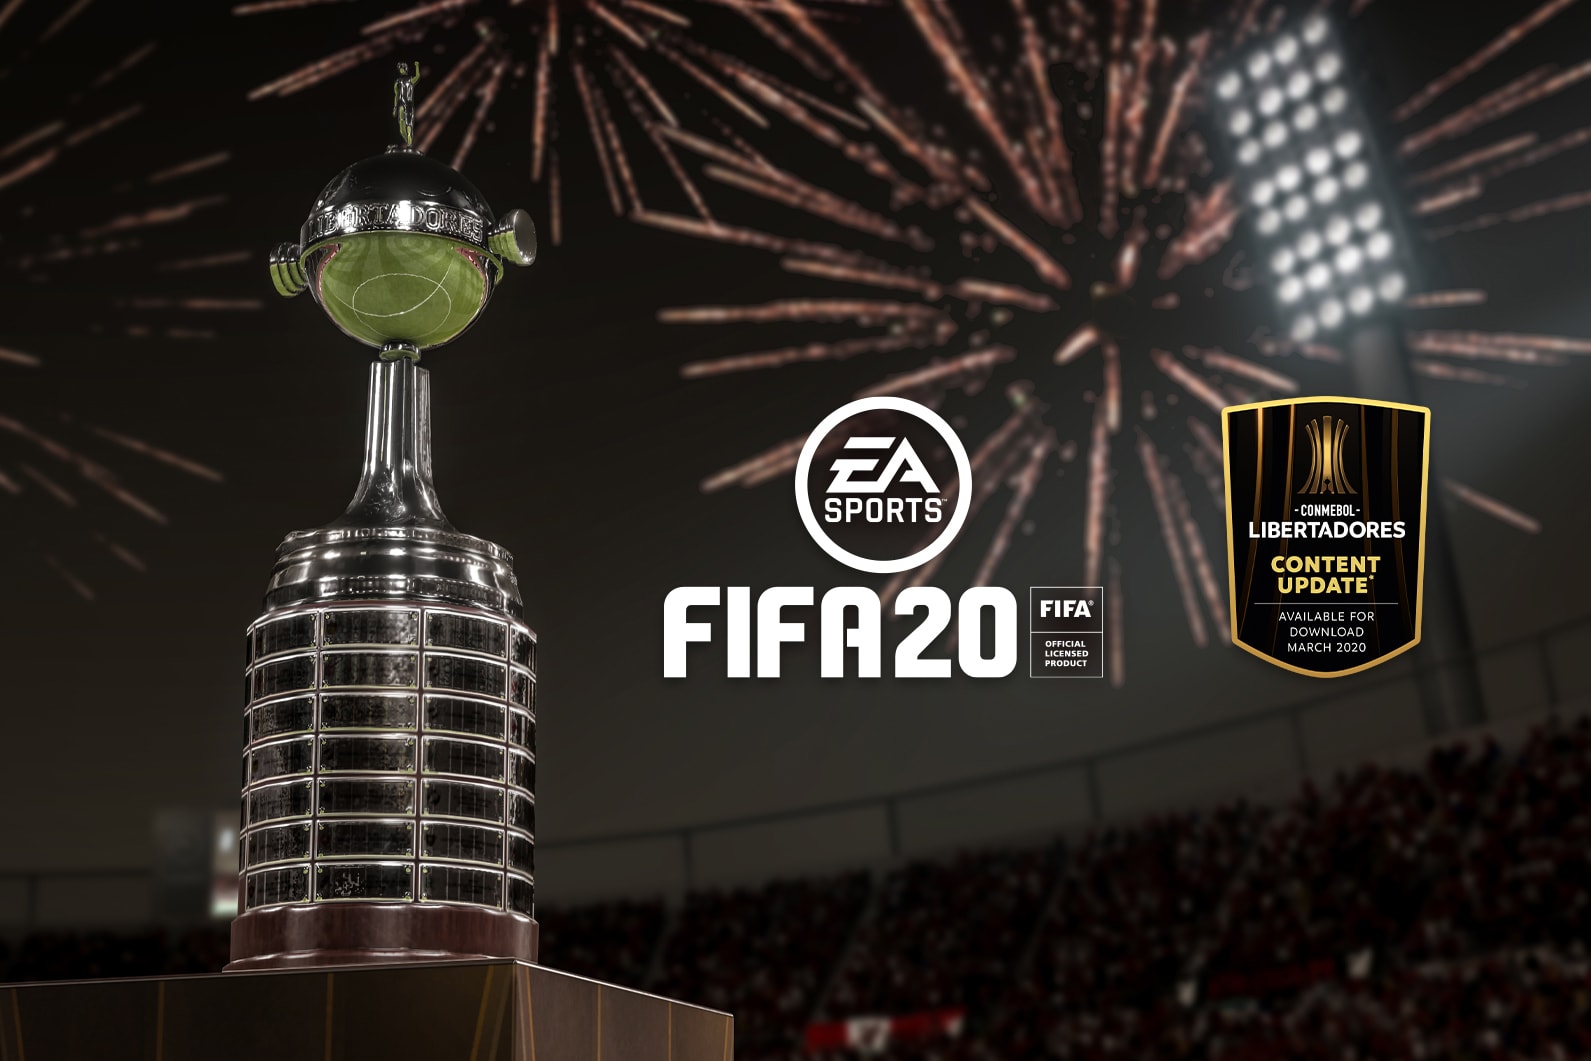 'FIFA 20' Adding CONMEBOL Libertadores Feature football soccer gaming video games ea sports entertainment south america 